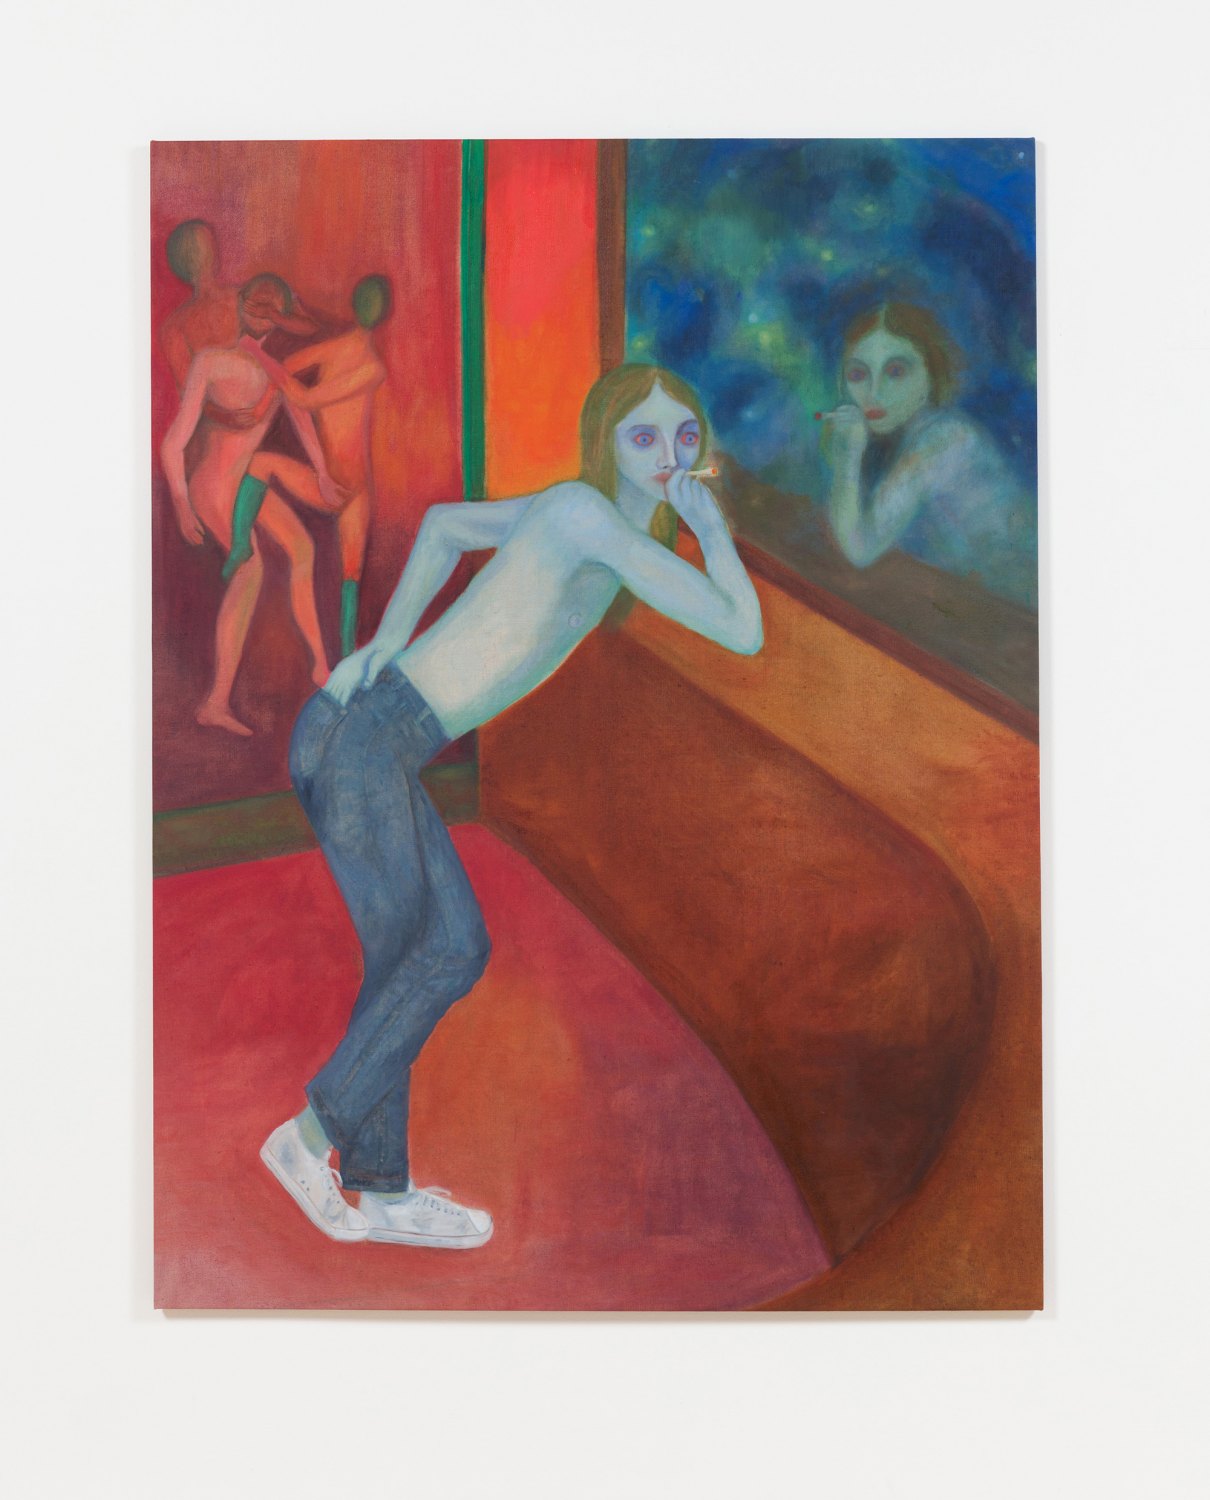 Jill Mulleady Prince S, 2017 Oil on linen, 165 x 126 cm